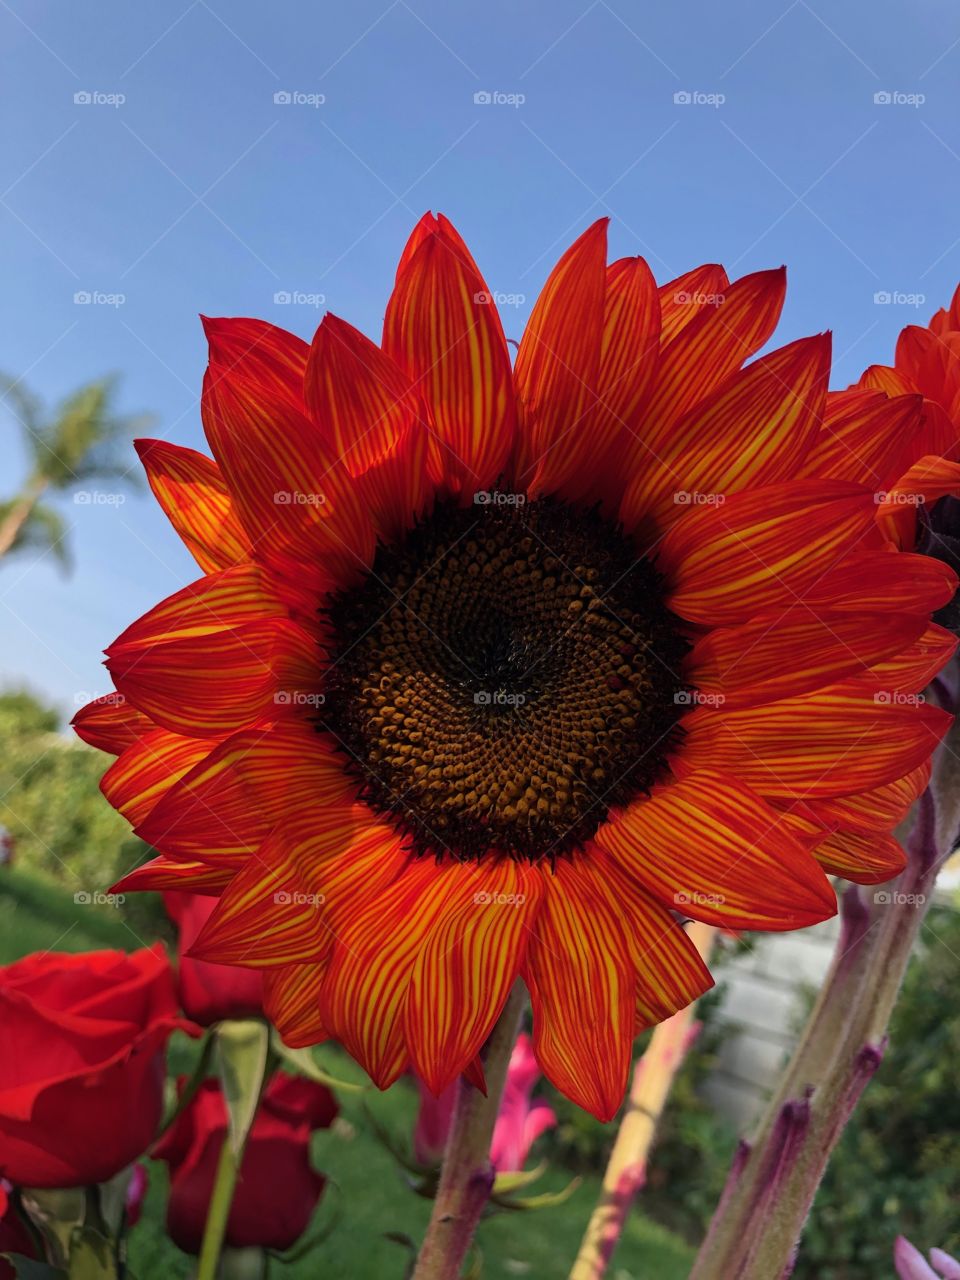 Red-orange sunflower 